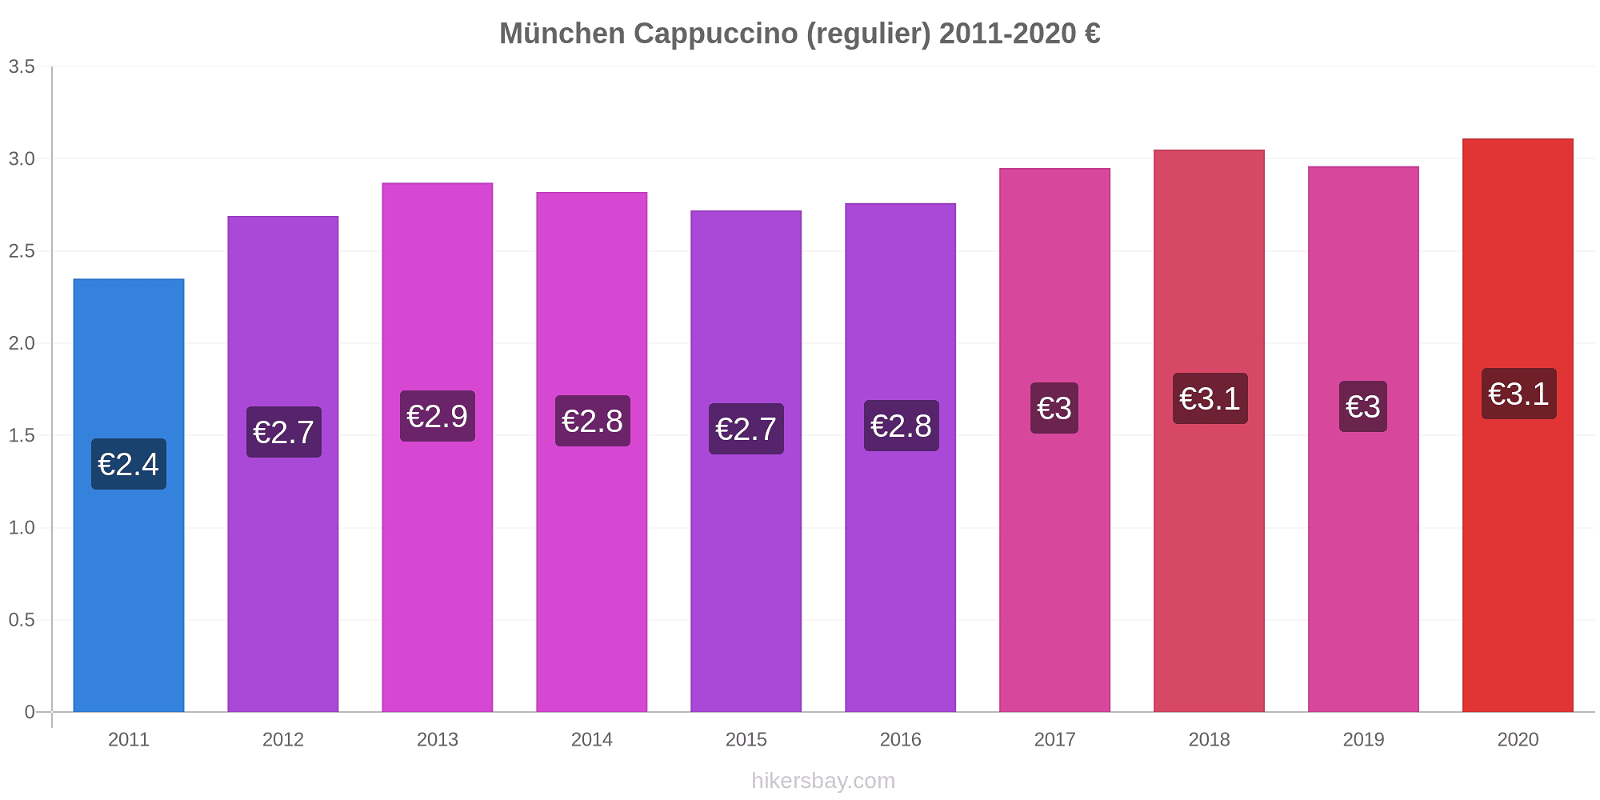 München prijswijzigingen Cappuccino (regelmatige) hikersbay.com